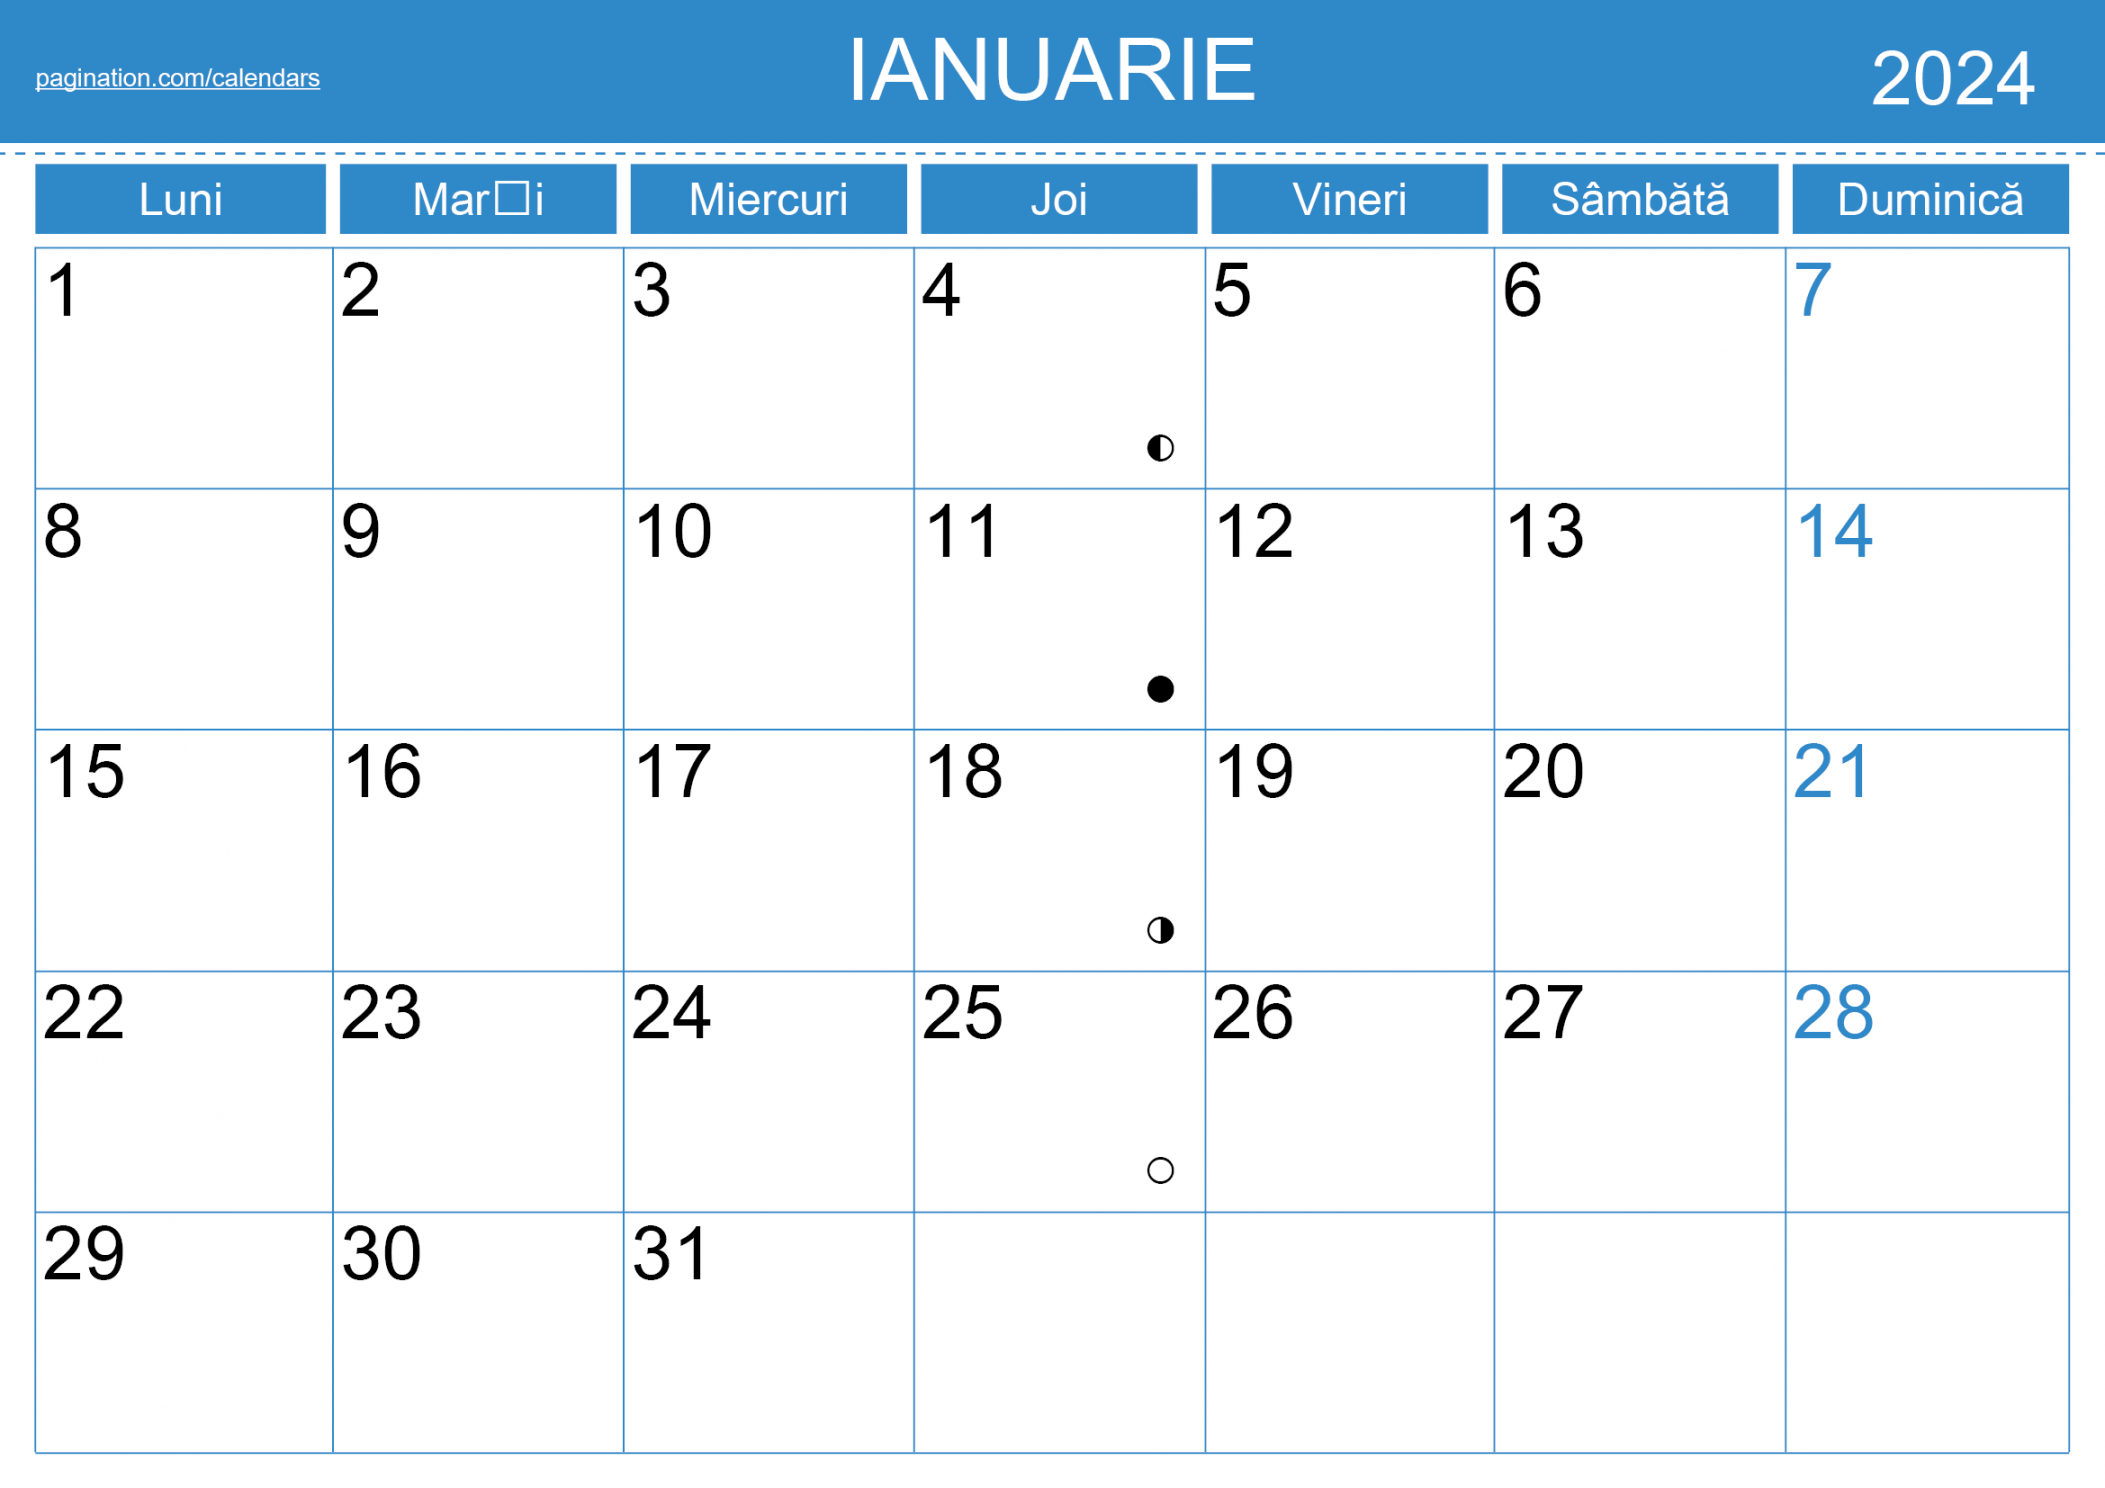 Calendar InDesign - română (Romanian) - Pagination